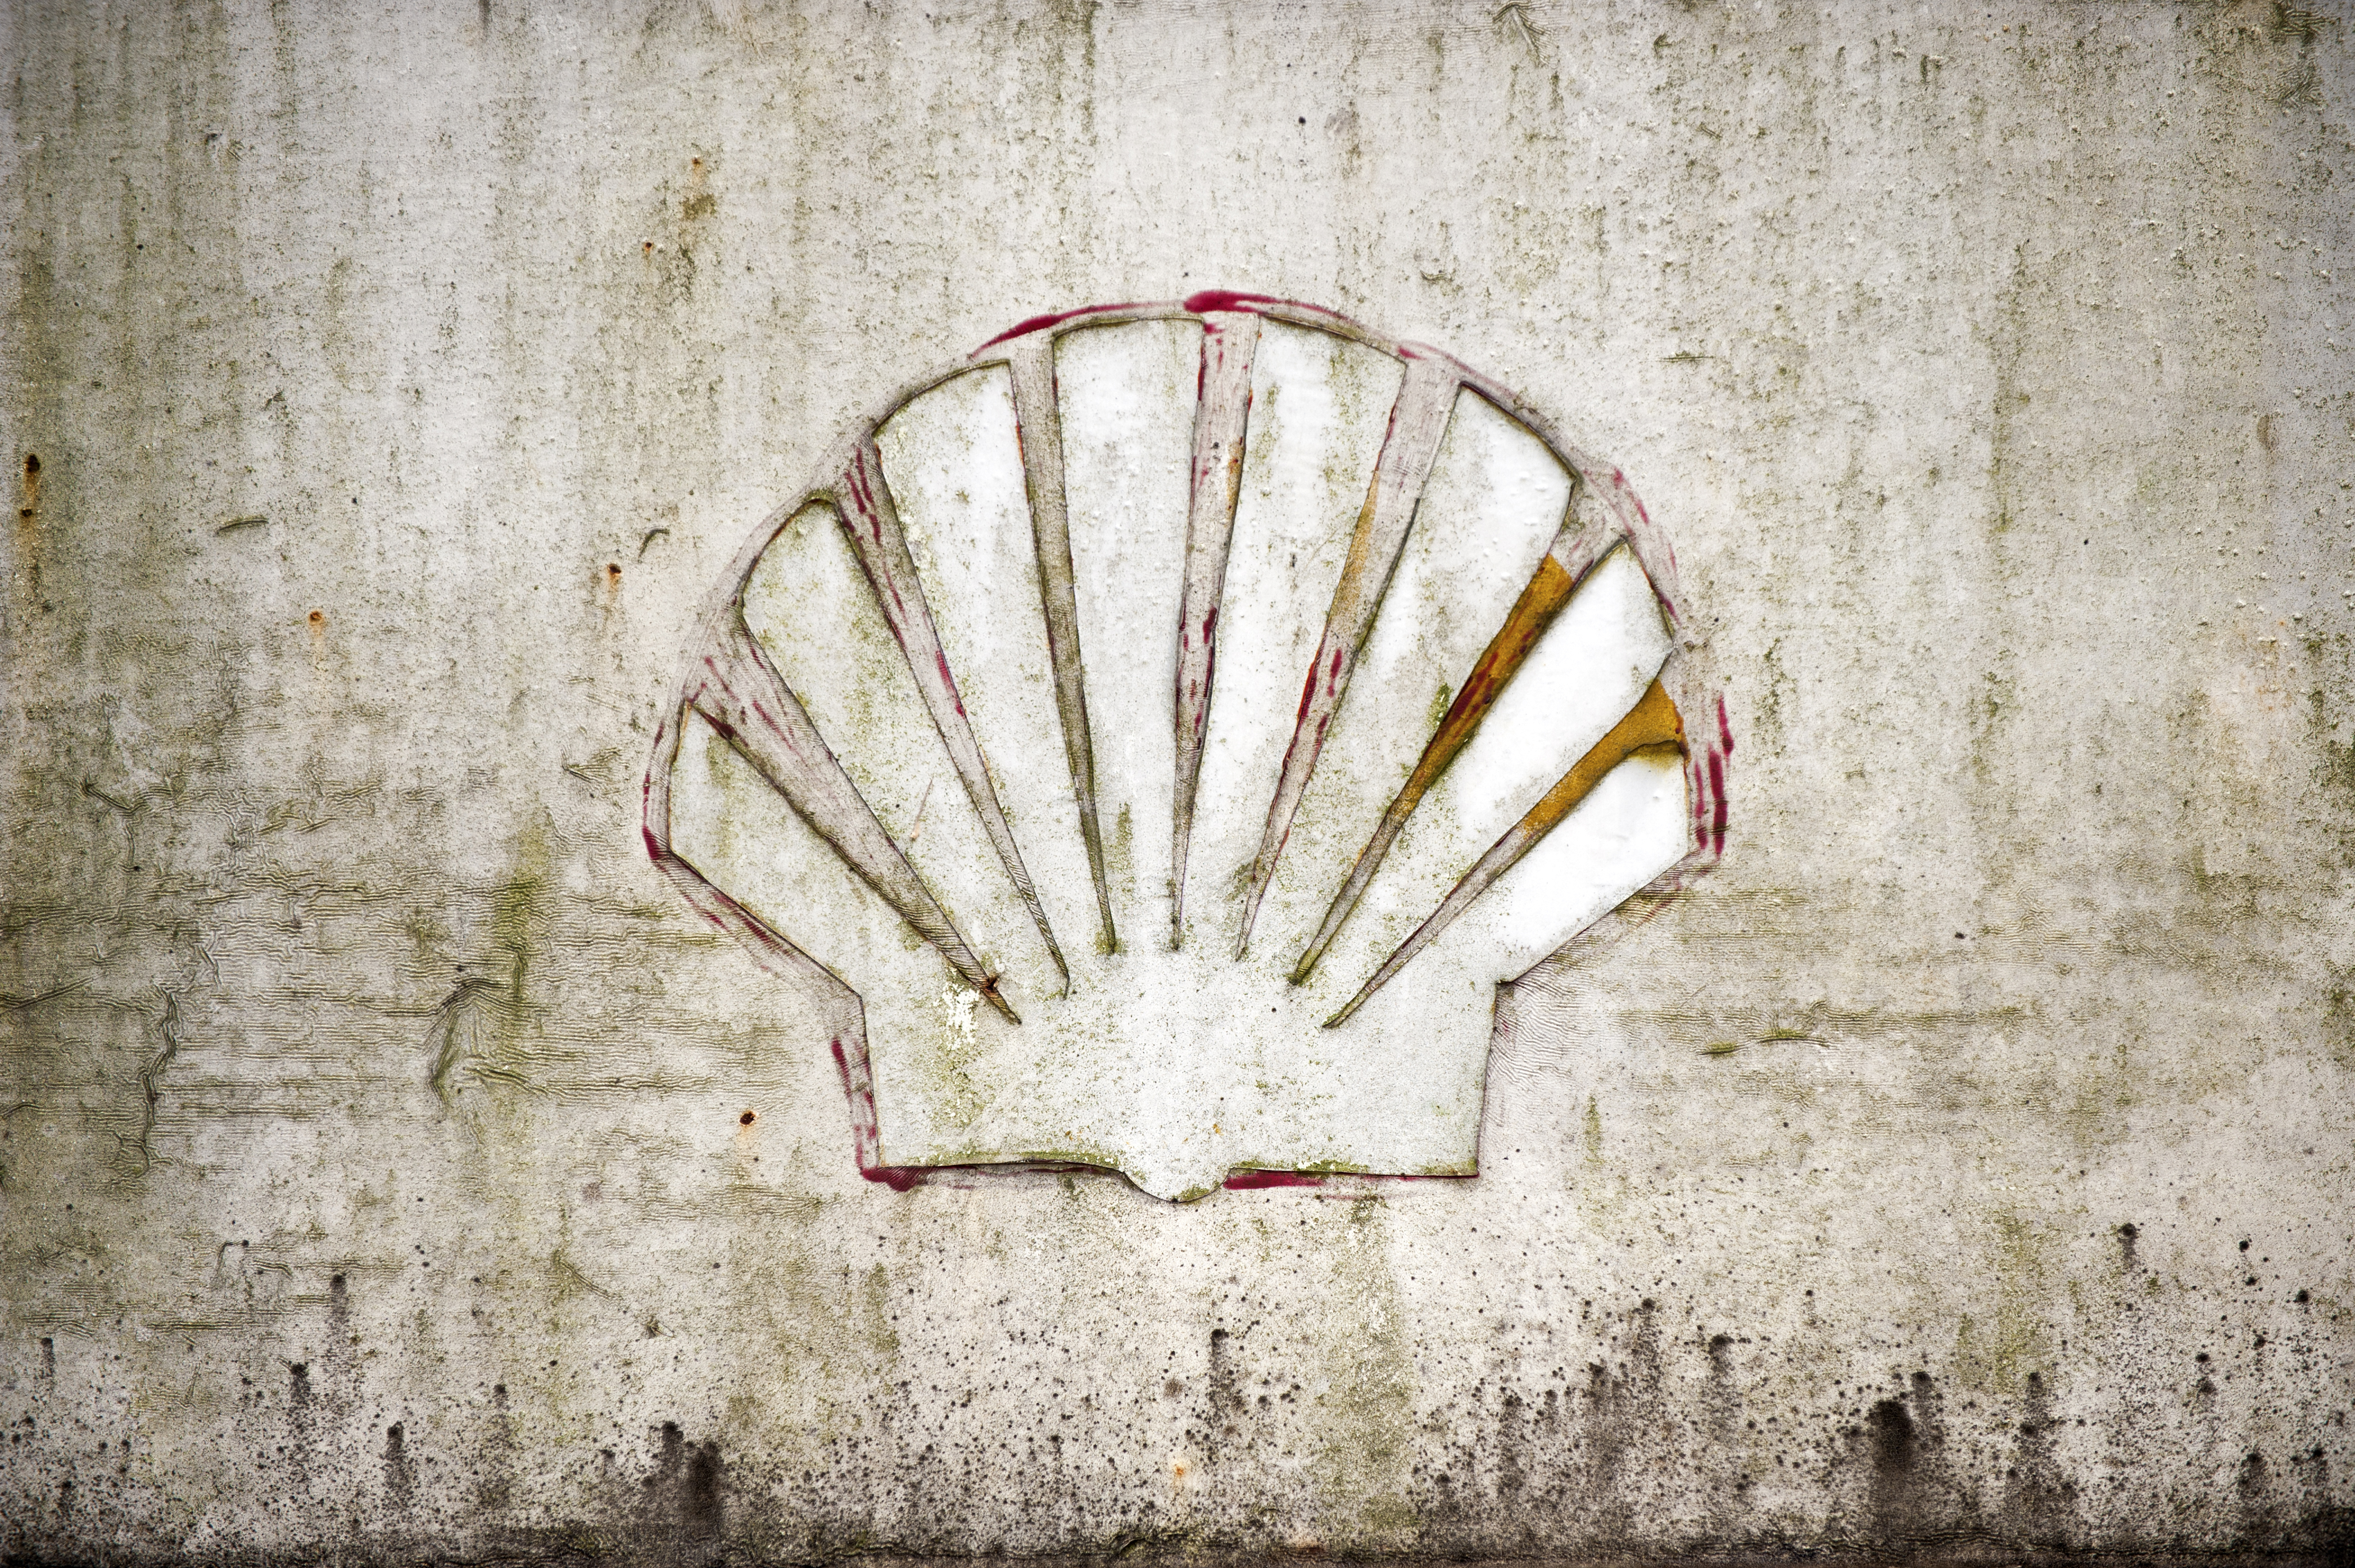 Het Nigeriaanse dochterbedrijf van Shell betaalt 55 miljoen Britse pond (70,2 miljoen euro) om de schade te vergoeden die ontstond door olielekkages bij het Nigeriaanse dorp Bodo. Dat maakte het olieconcern woensdag bekend. Shell erkende in augustus 2011 al verantwoordelijk te zijn voor twee olielekkages bij Bodo in 2008. De geleden schade wordt met 35 miljoen pond gecompenseerd, het restant komt ten goede aan de gehele gemeenschap. Het geld wordt betaald door Shell Petroleum Development Company of Nigeria (SPDC), waarin Shell een belang heeft van 30 procent. "We hebben vanaf het begin onze verantwoordelijkheden erkend en genomen voor de twee betreurenswaardige lekkages en zijn tevreden dat we een schikking hebben bereikt'', aldus directeur Mutiu Sunmonu van SPDC. Eerdere pogingen om te schikken mislukten, onder meer vanwege "buitensporige claims'', die op enig moment in totaal meer dan 300 miljoen pond bedroegen. Kritiek van Amnesty Amnesty International liet weten blij te zijn met de "langverwachte overwinning'', maar had ook de nodige kritiek op de handelswijze van Shell. "Het had geen zes jaar mogen duren om tot een faire compensatie te komen.'' Amnesty kaartte daarnaast nogmaals aan dat de vervuiling veel omvangrijker was dan Shell publiekelijke wilde toegeven. "Volgens Shell gaat het om circa 4000 vaten, terwijl de lekkage weken duurde.'' In 2012 liet Amnesty een onderzoek uitvoeren waaruit zou zijn gebleken dat het om meer dan 10.000 vaten gaat. Hoger beroep Milieudefensie heeft de bewoners van Bodo gefeliciteerd met de overwinning. Ook liet de vereniging weten met vertrouwen te kijken naar het hoger beroep in de rechtszaak die Milieudefensie met andere Nigeriaanse dorpen aanspande tegen Shell. Het hoger beroep speelt in maart in Nederland. Milieudefensie hoopt dat Shell kan worden gedwongen documenten openbaar te maken die mogelijk nalatigheid van het oliebedrijf aantonen.